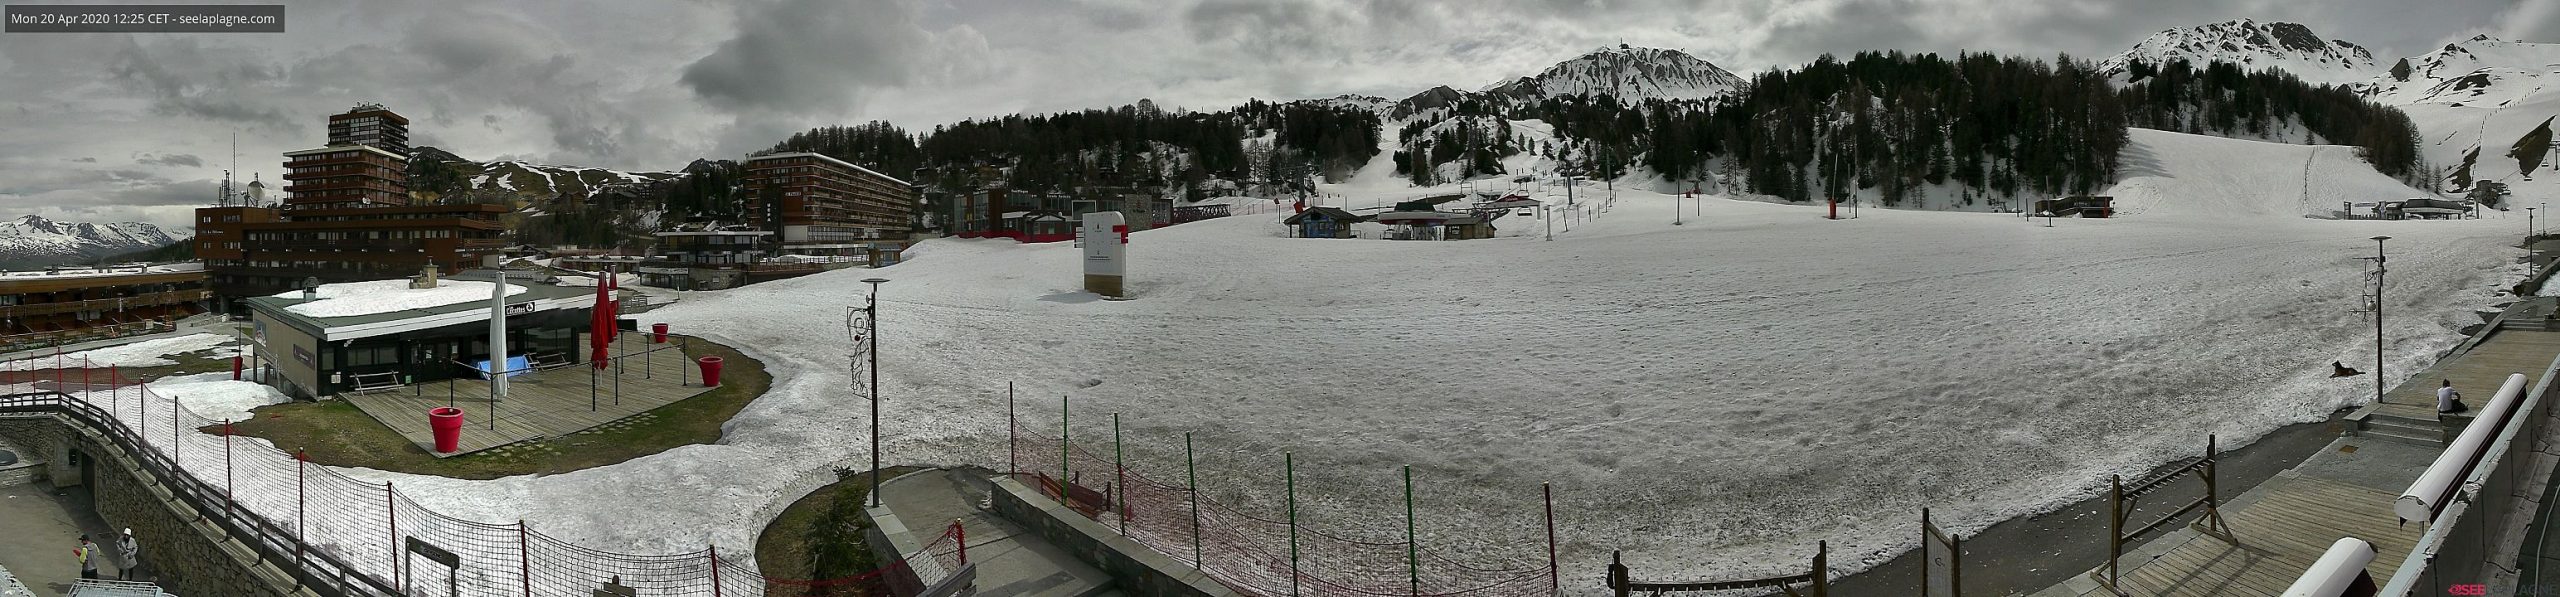 Webcam de la Estación de Esquí de La Plagne ParadiSki